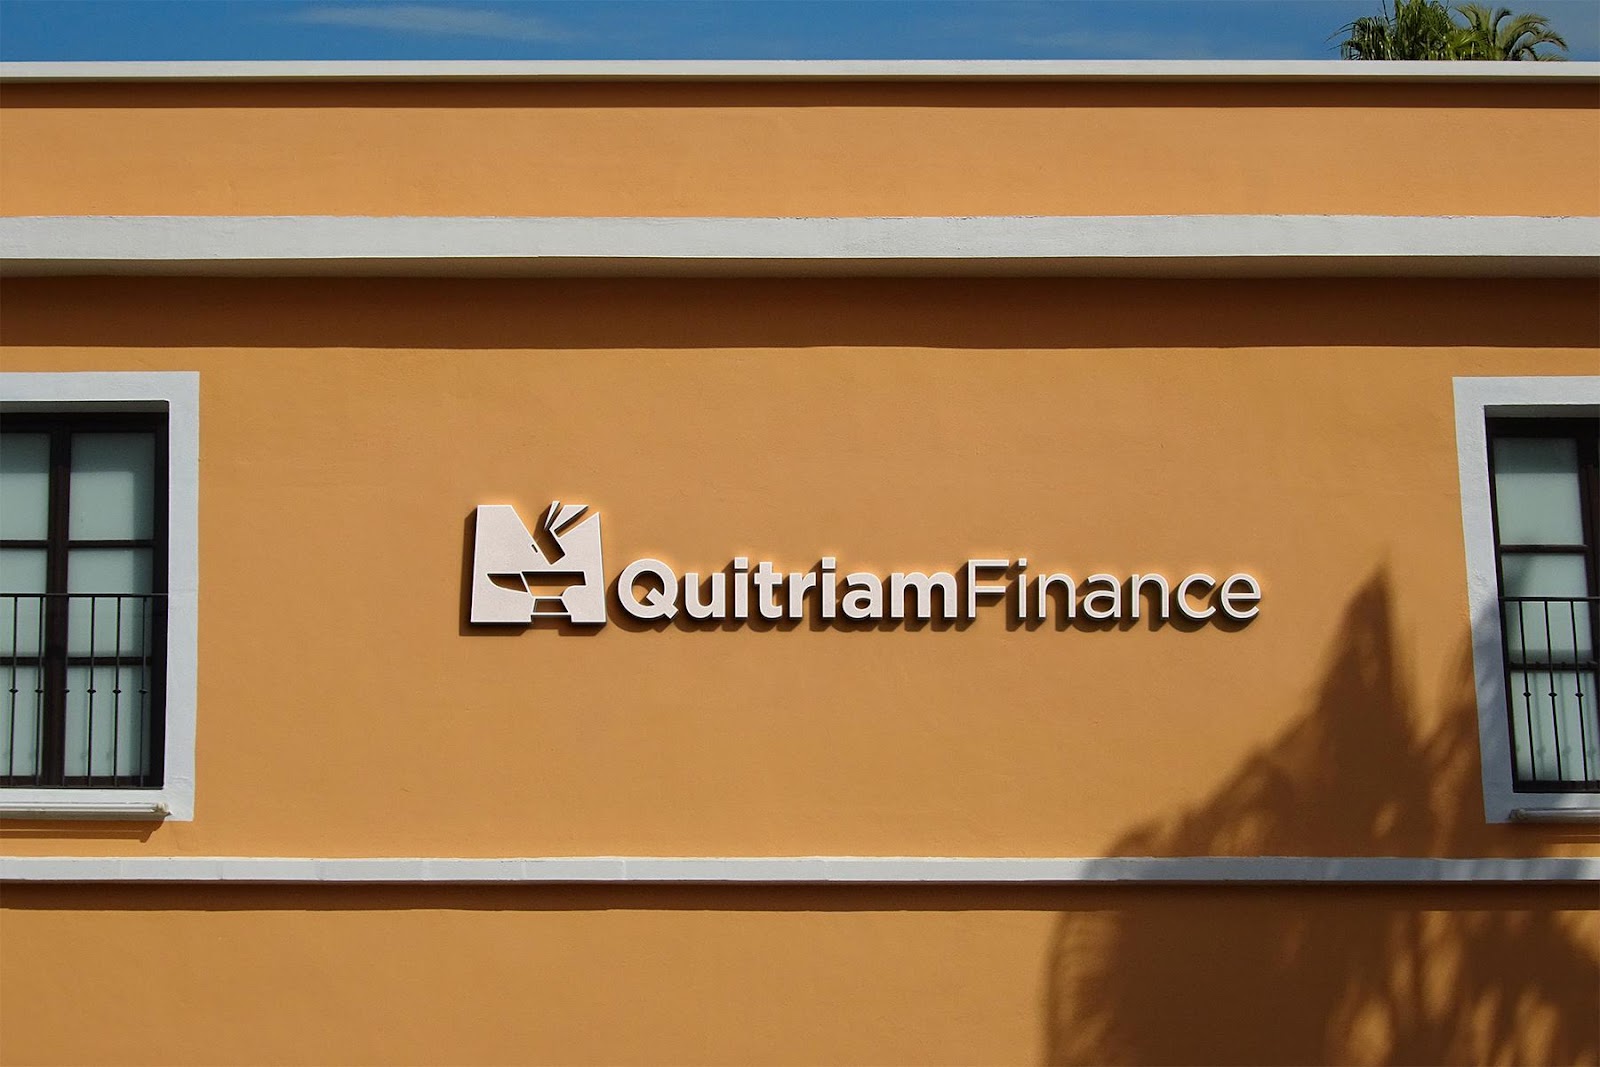 Quitriam Finance